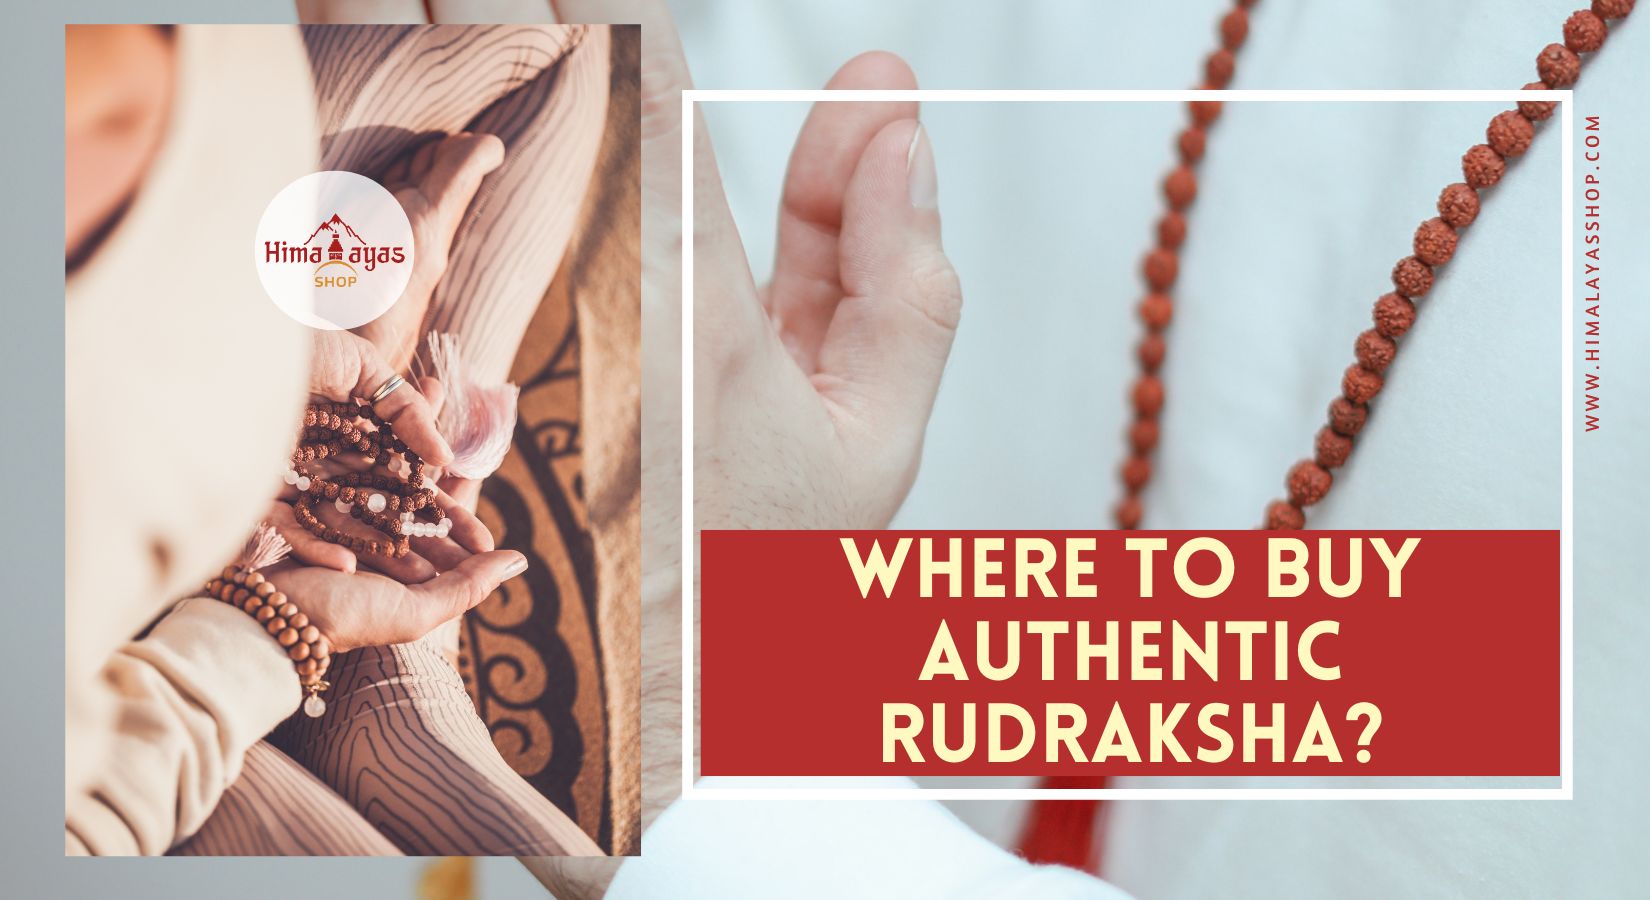 Buying Authentic Rudraksha